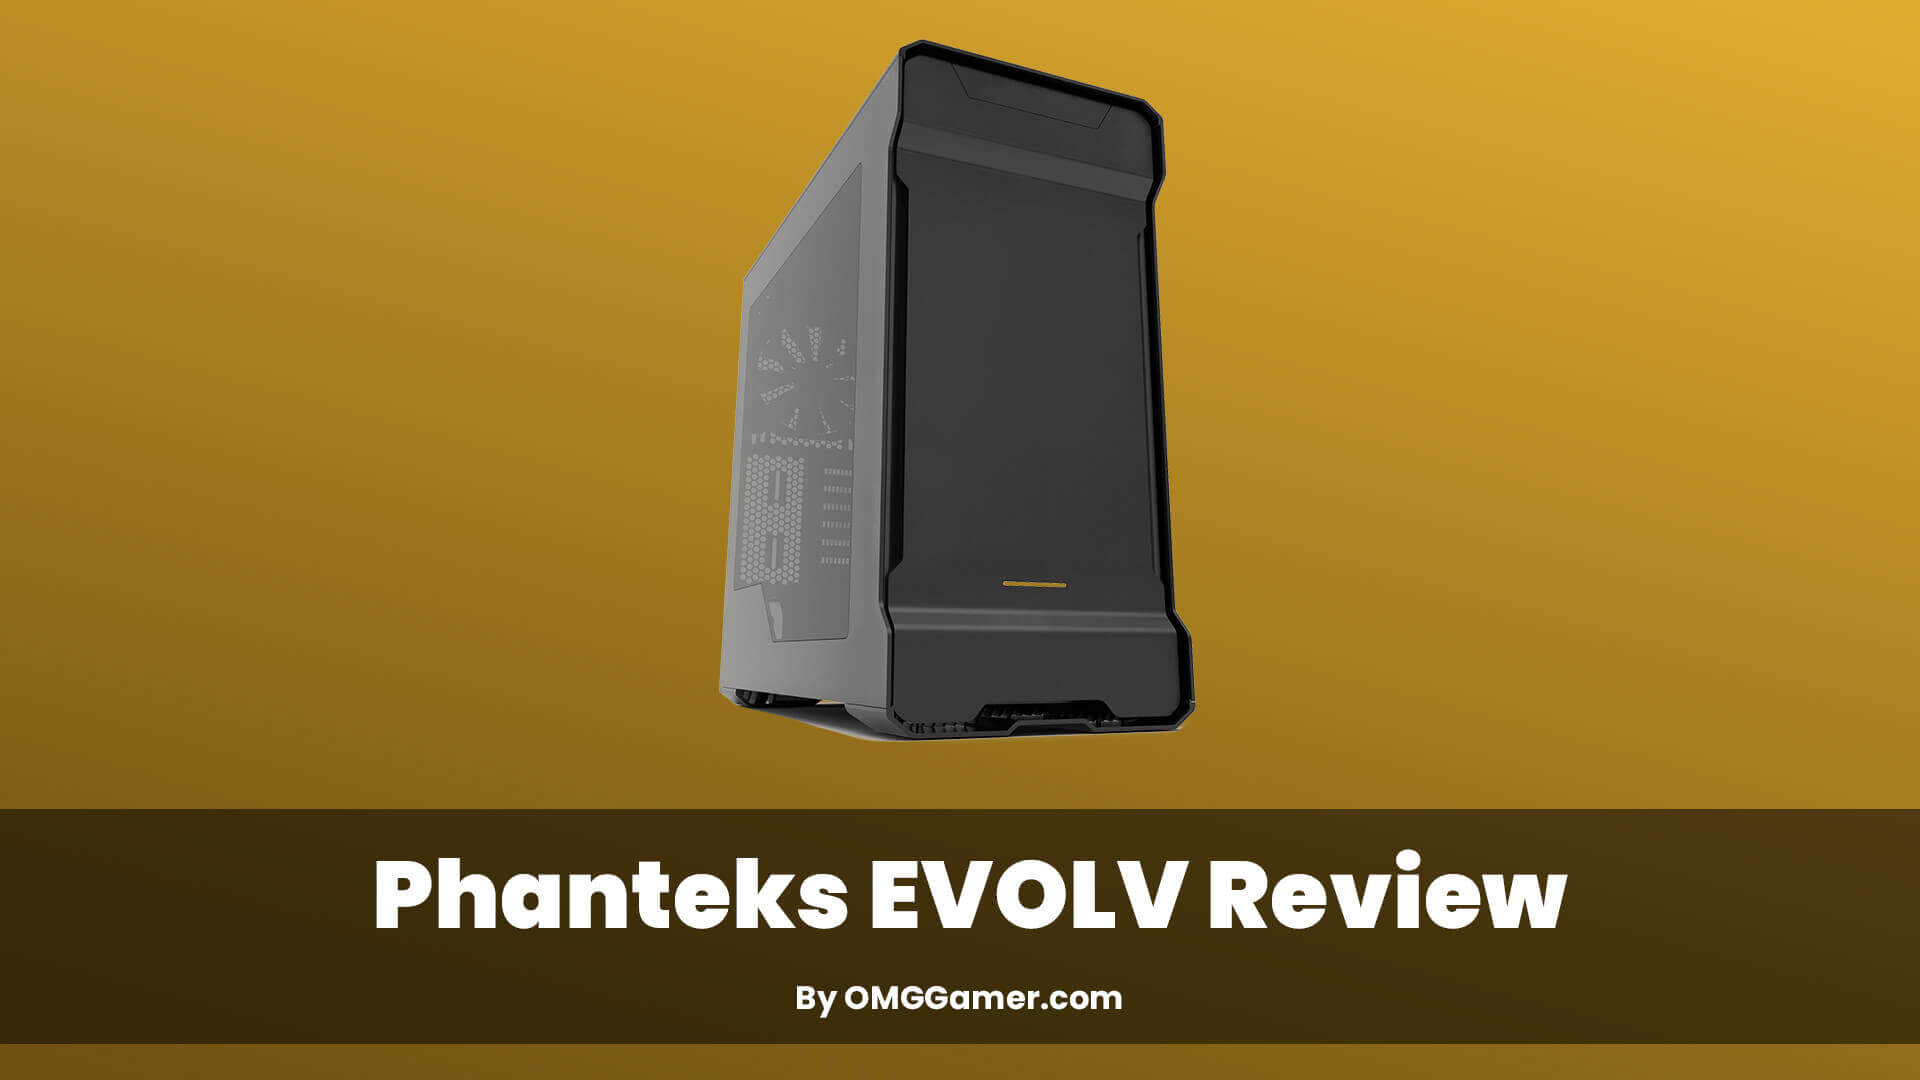 Phanteks EVOLV Review